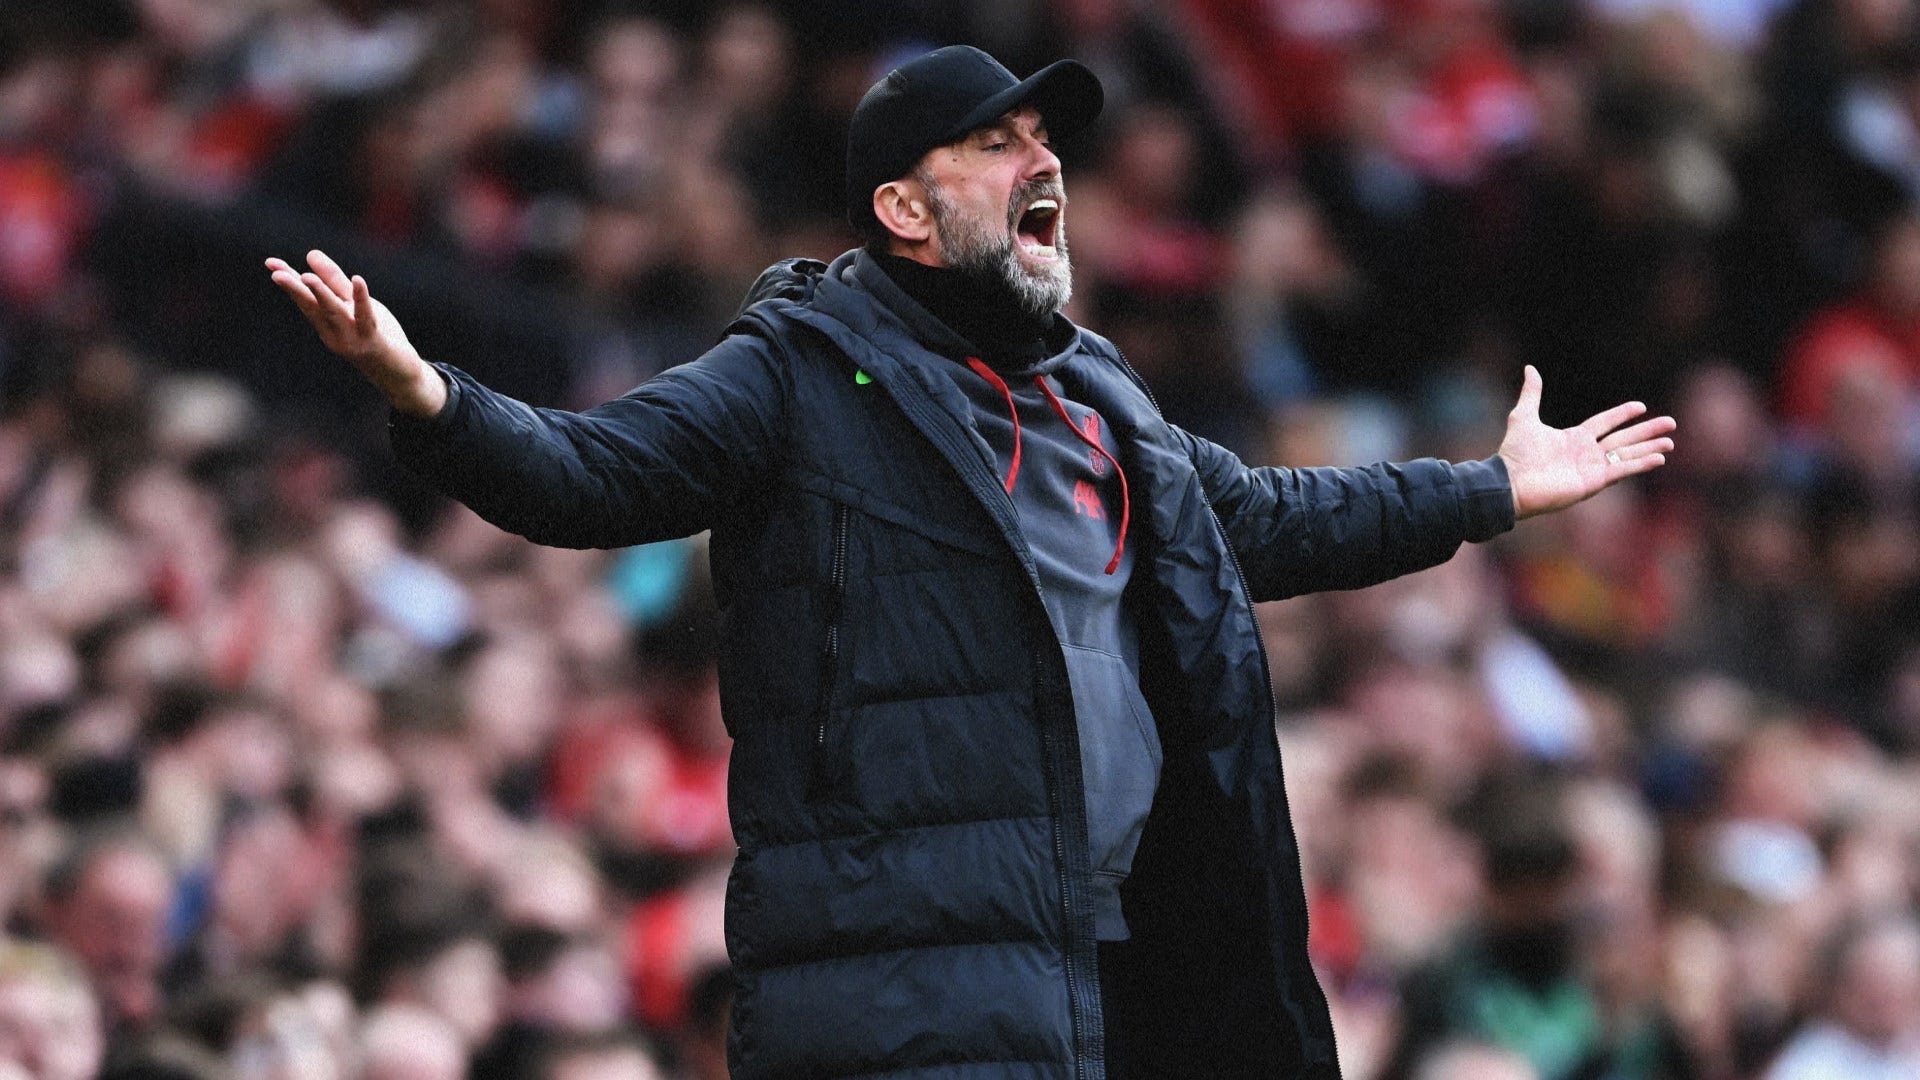 "So ein gnadenlos schlechter Verlierer": Liverpools Trainer Jürgen Klopp wird nach abgebrochenem Interview scharf attackiert